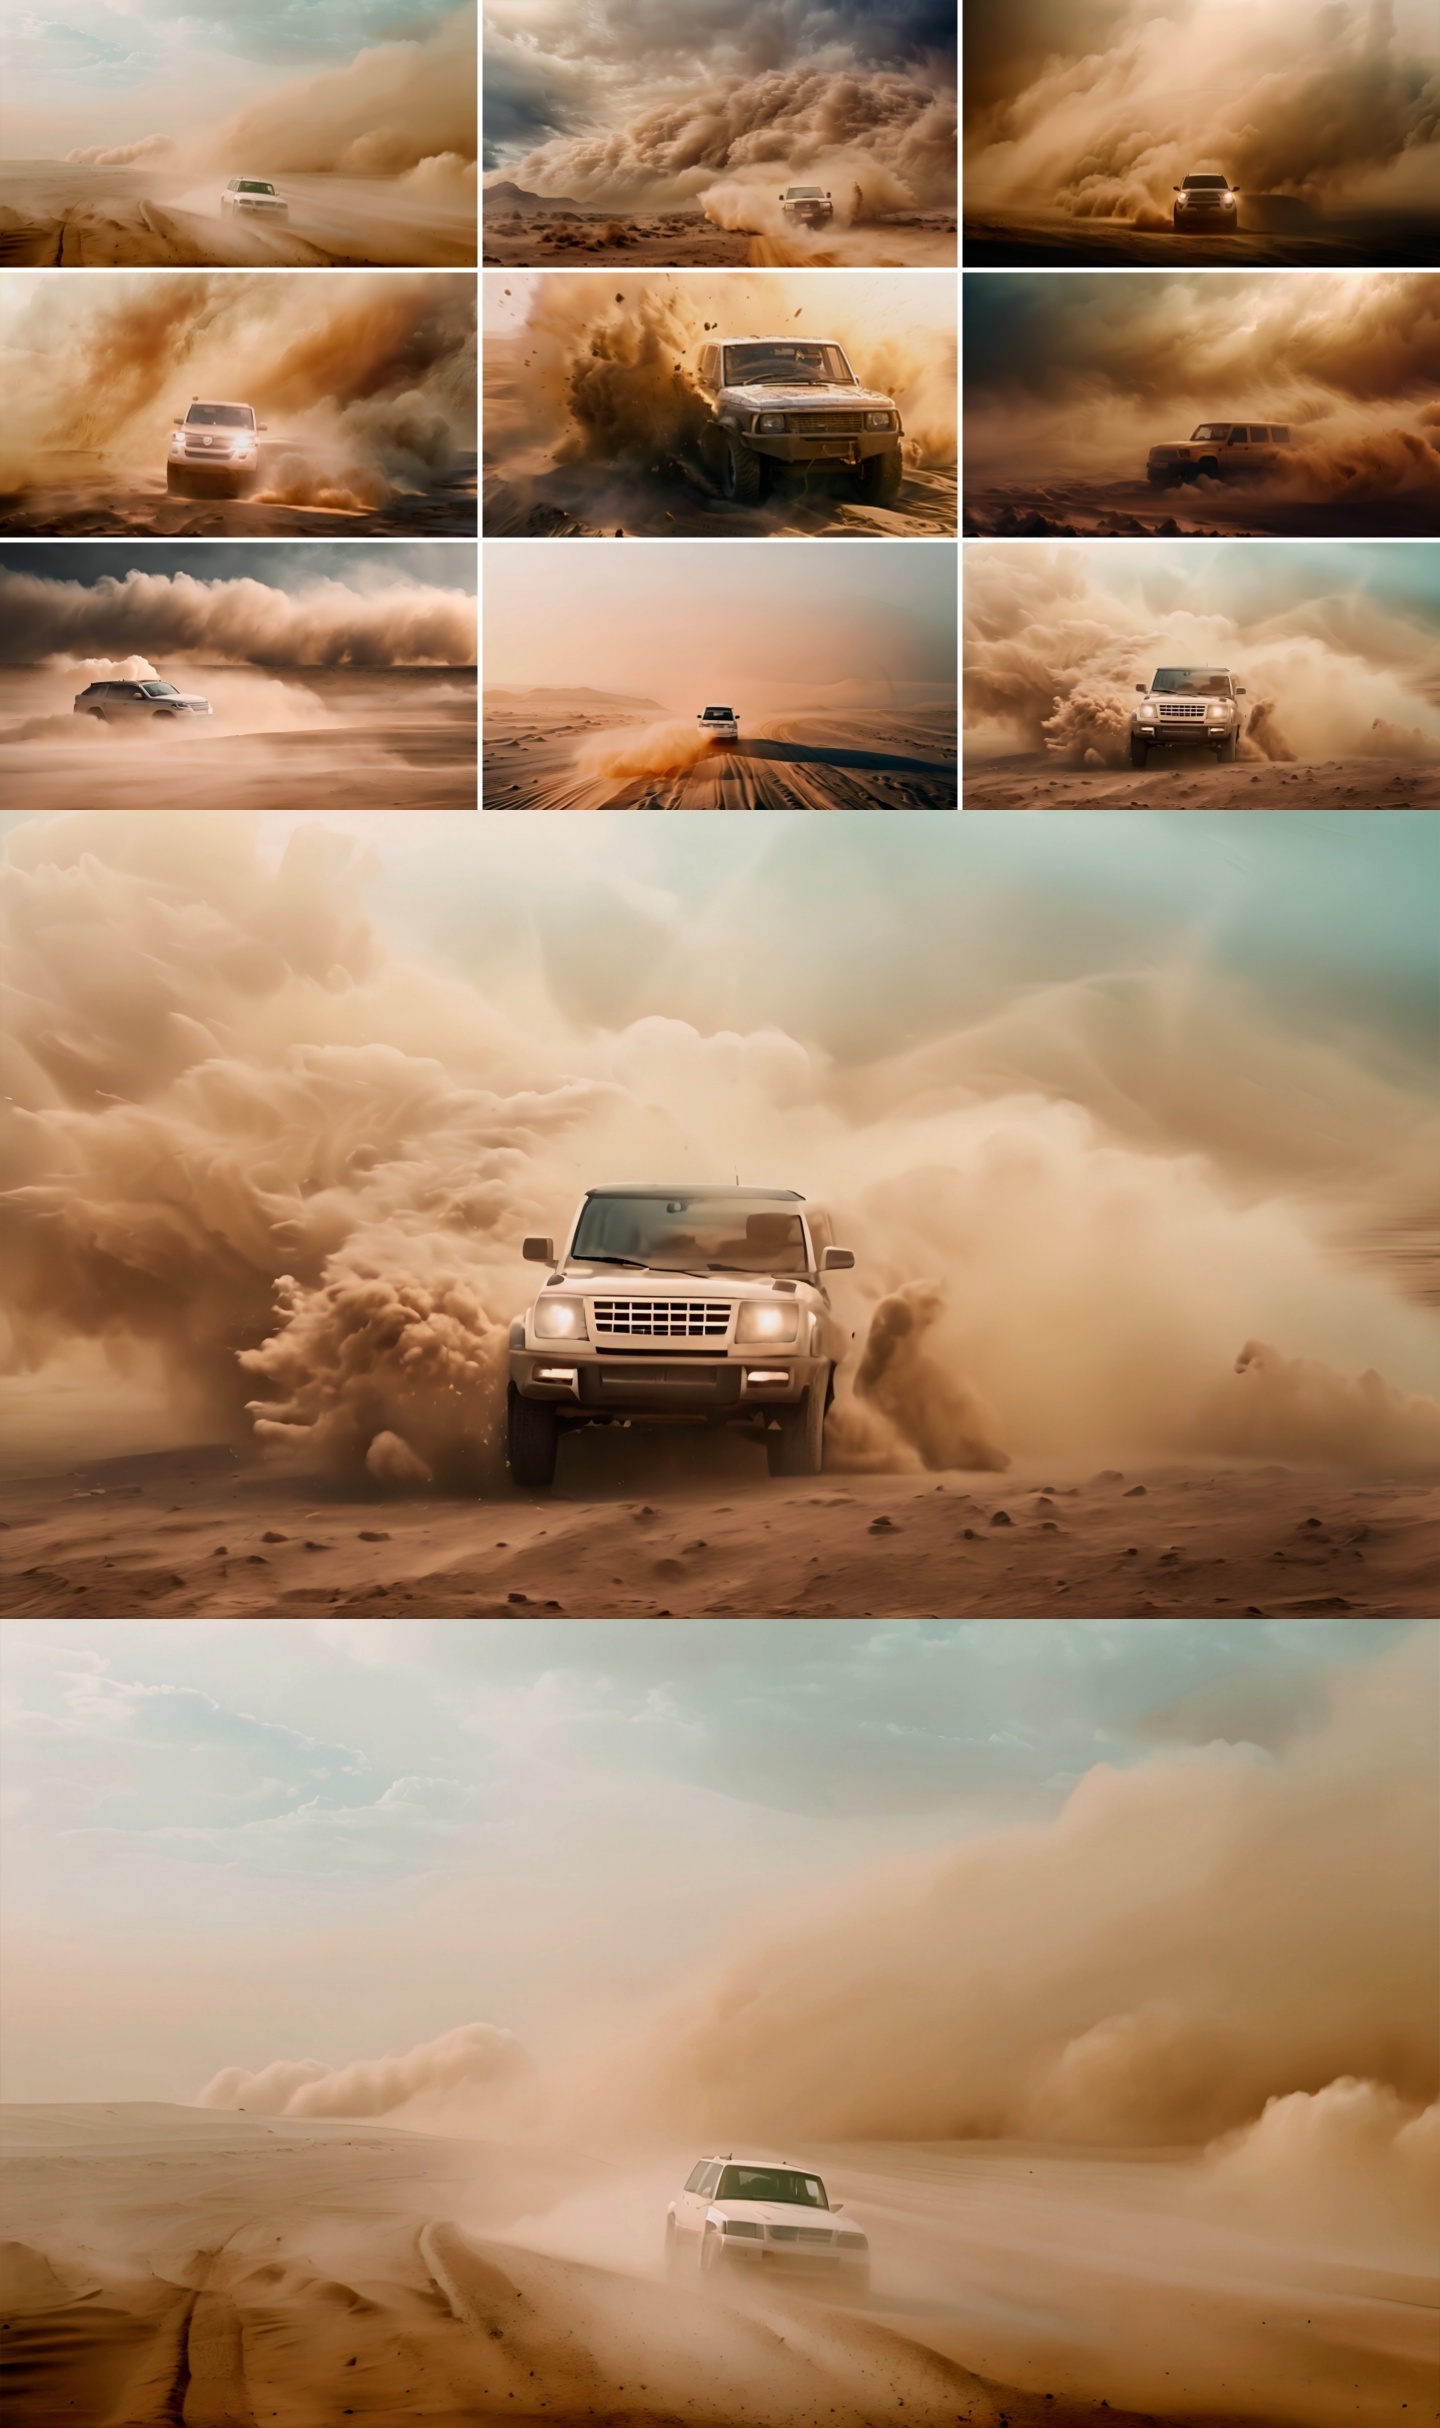 汽车穿越沙尘暴越野轿车穿越沙漠环境荒漠化